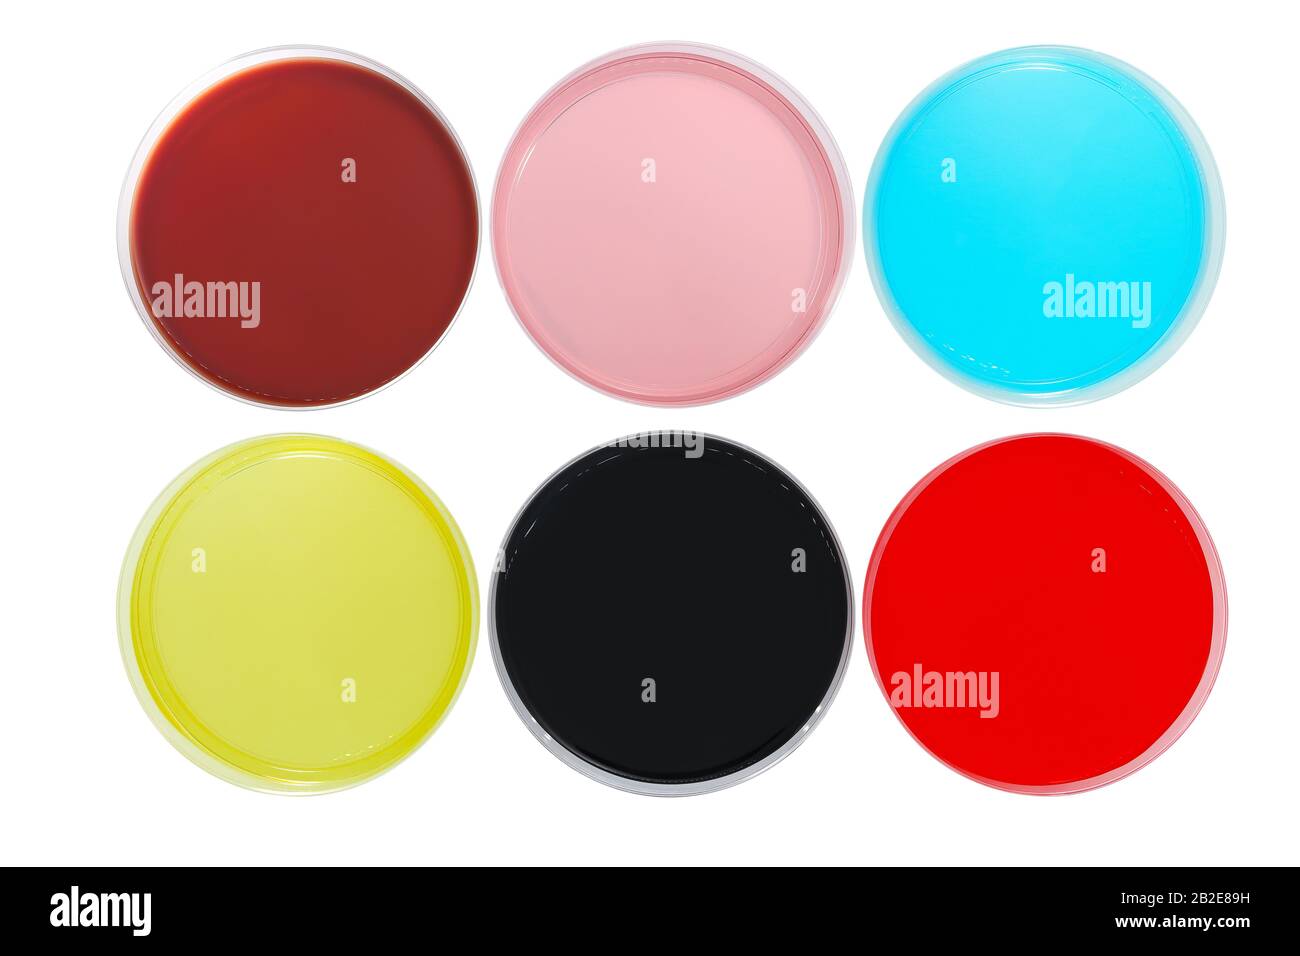 Diversi colori piatti Petri per esperimenti in laboratorio scientifico Foto Stock